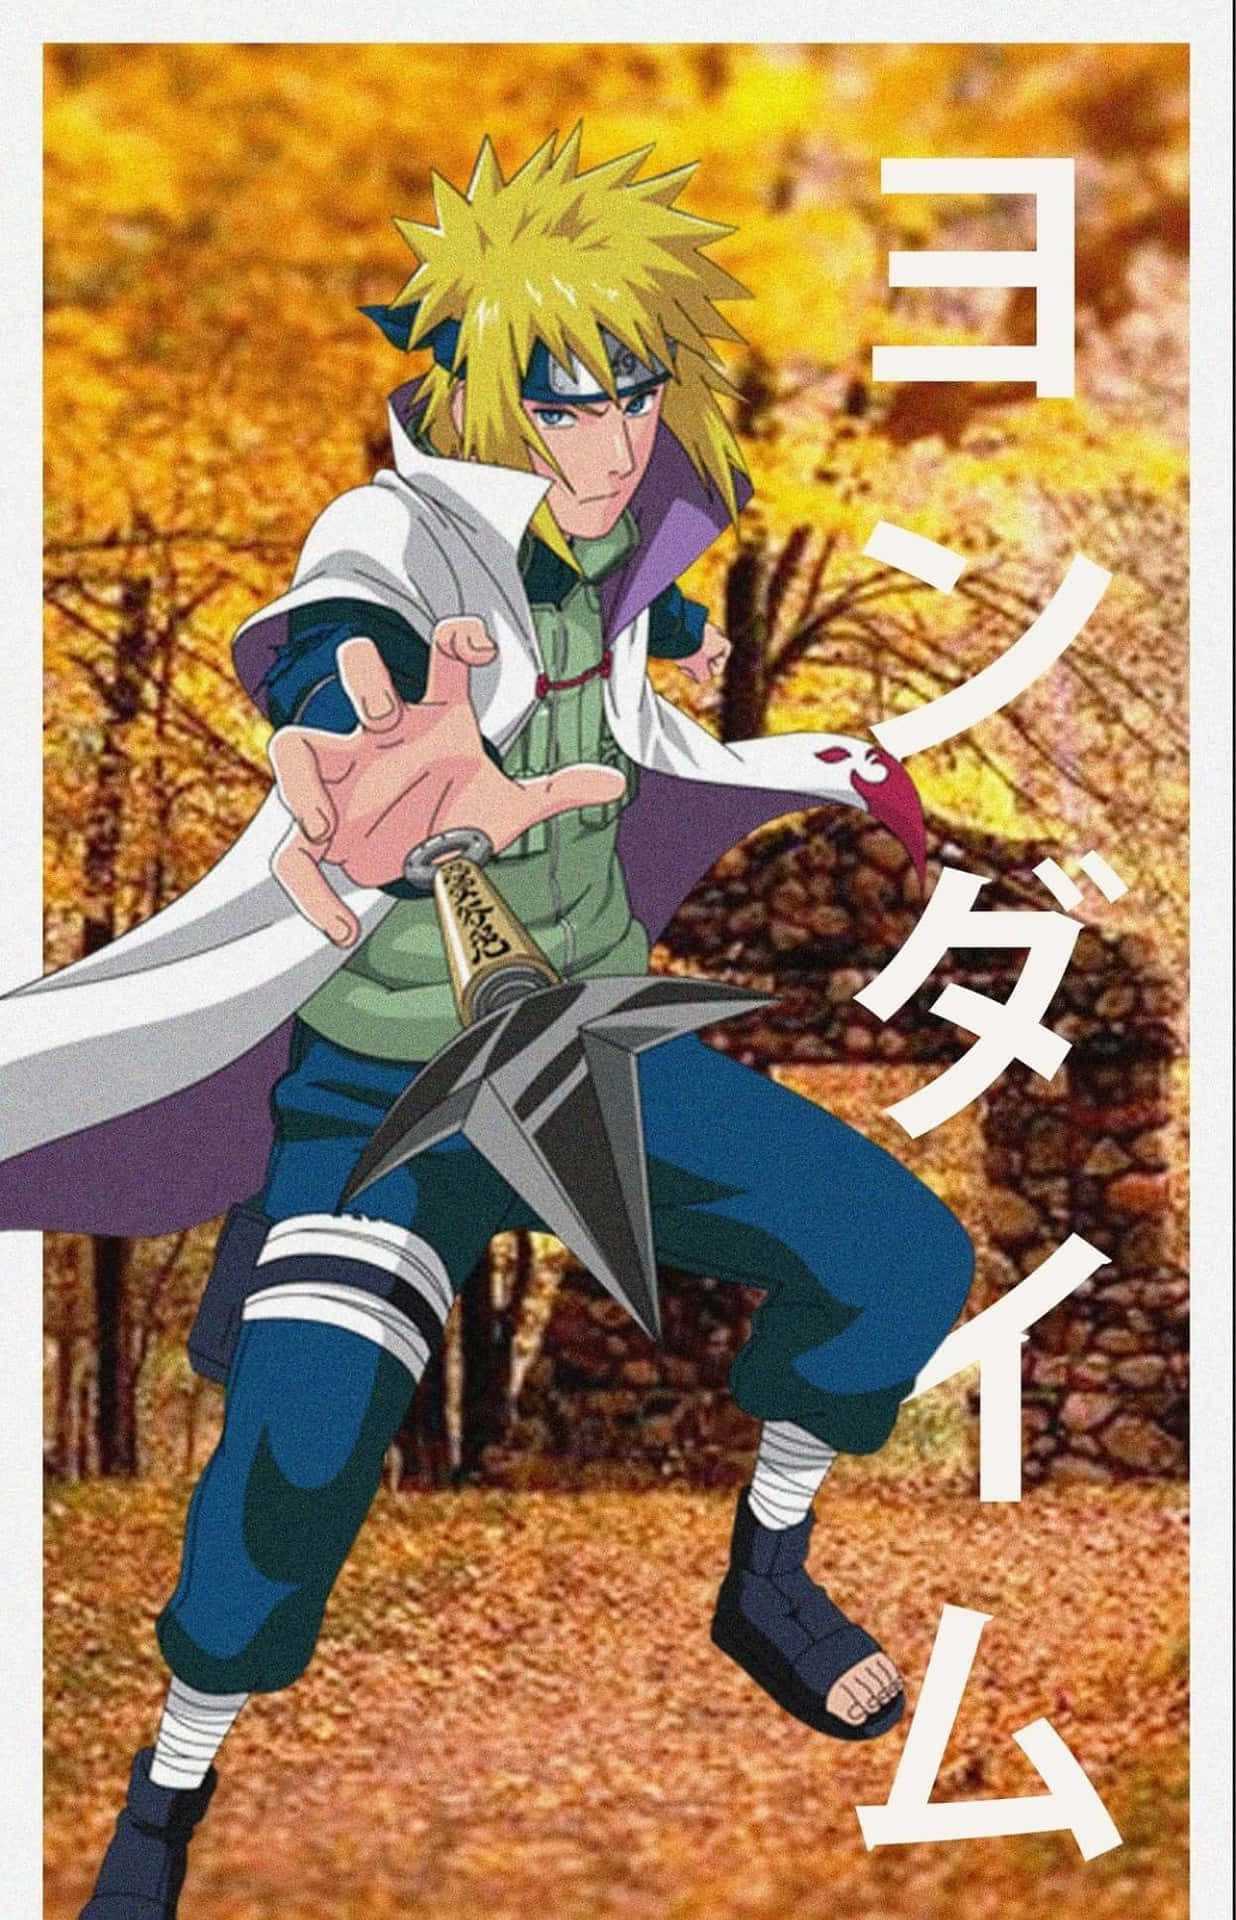 The Fourth Hokage, Minato Namikaze, striking a powerful pose in Naruto Shippuden Wallpaper